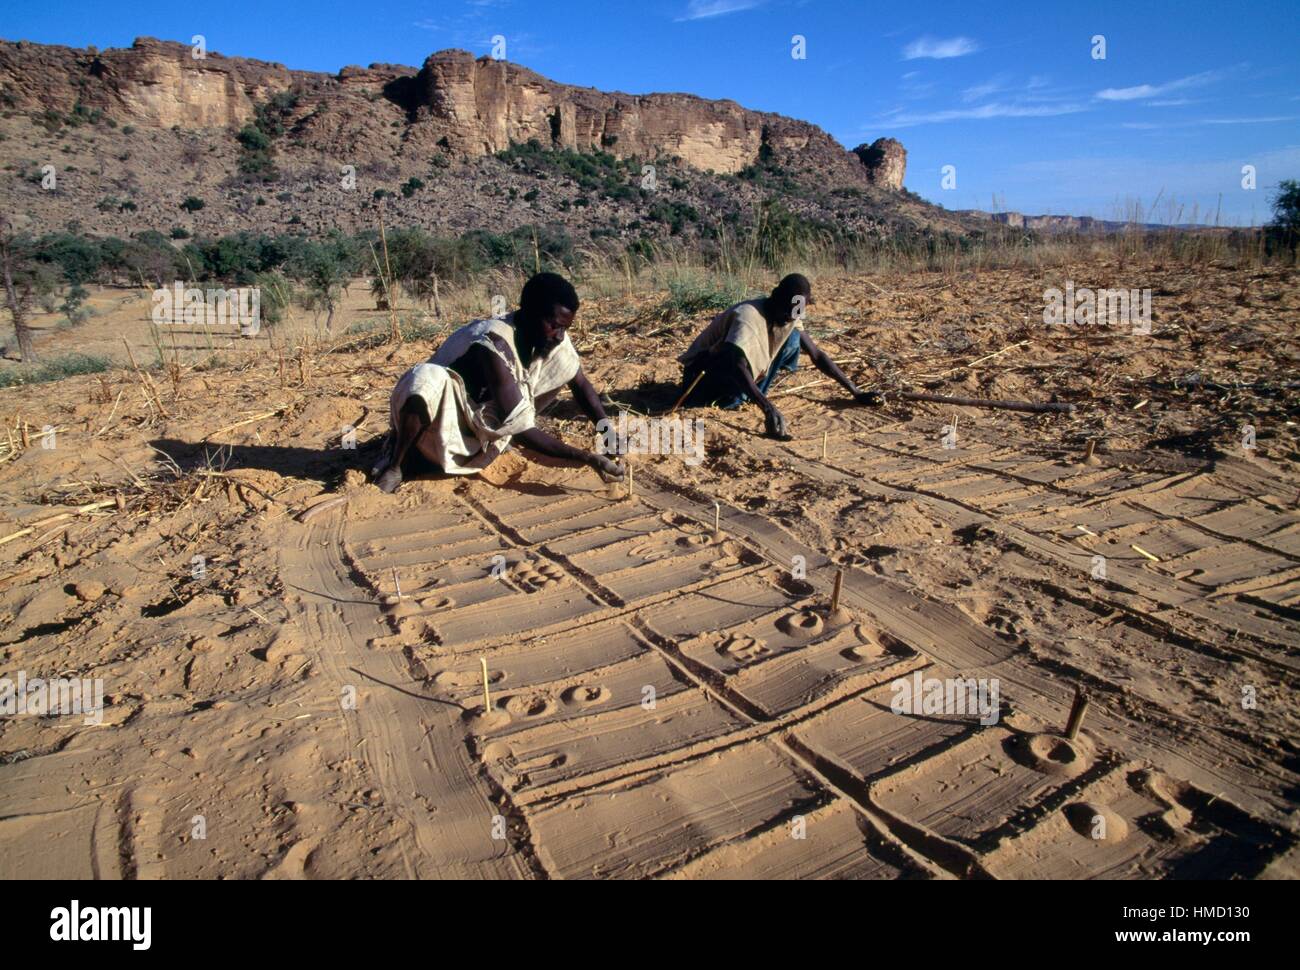 Preparing a table for divination, Tireli Mopti, Mali. Stock Photo